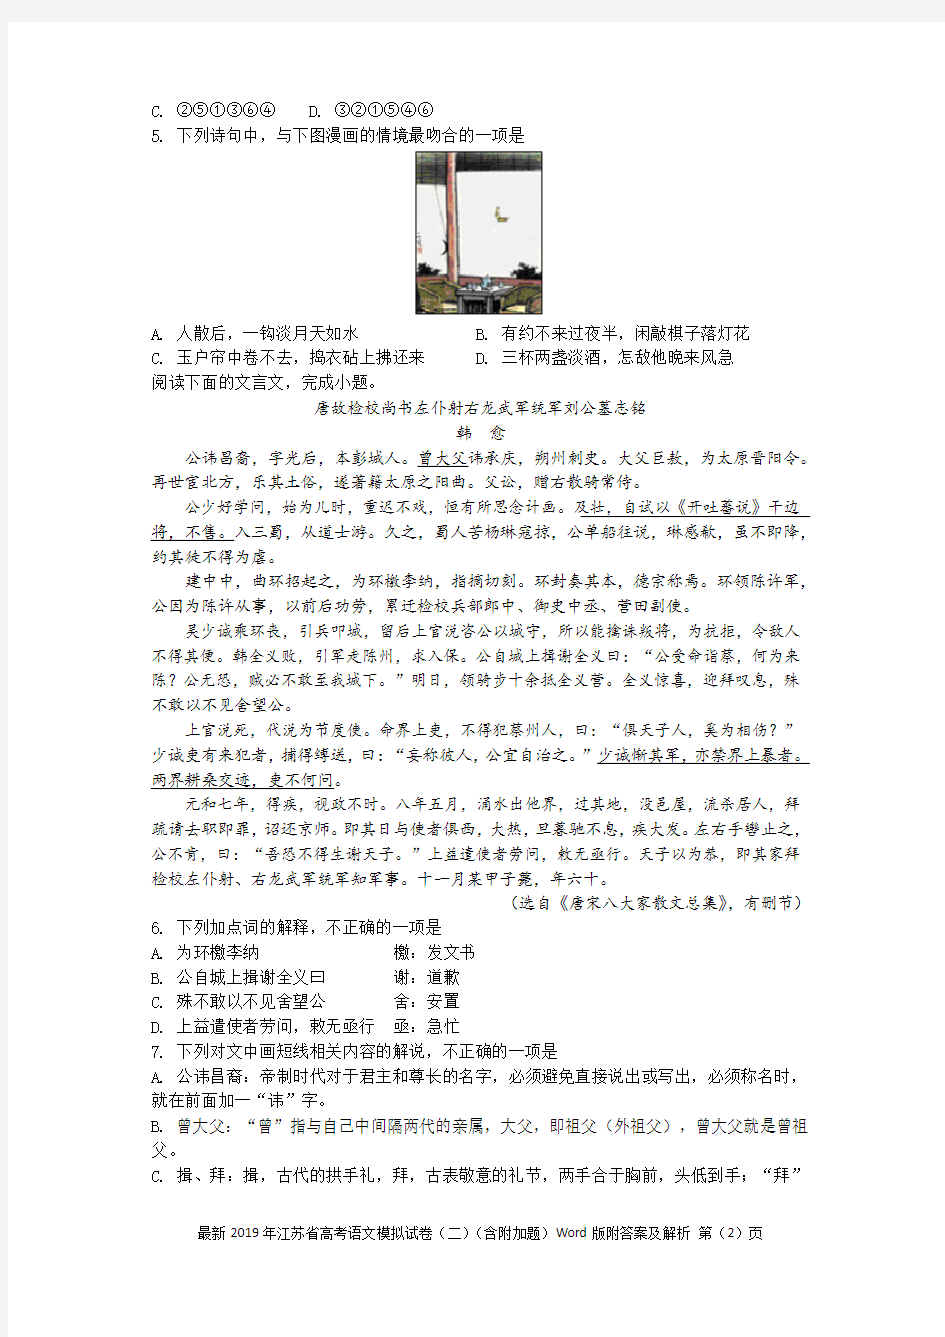 最新2019年江苏省高考语文模拟试卷(二)(含附加题)Word版附答案及解析